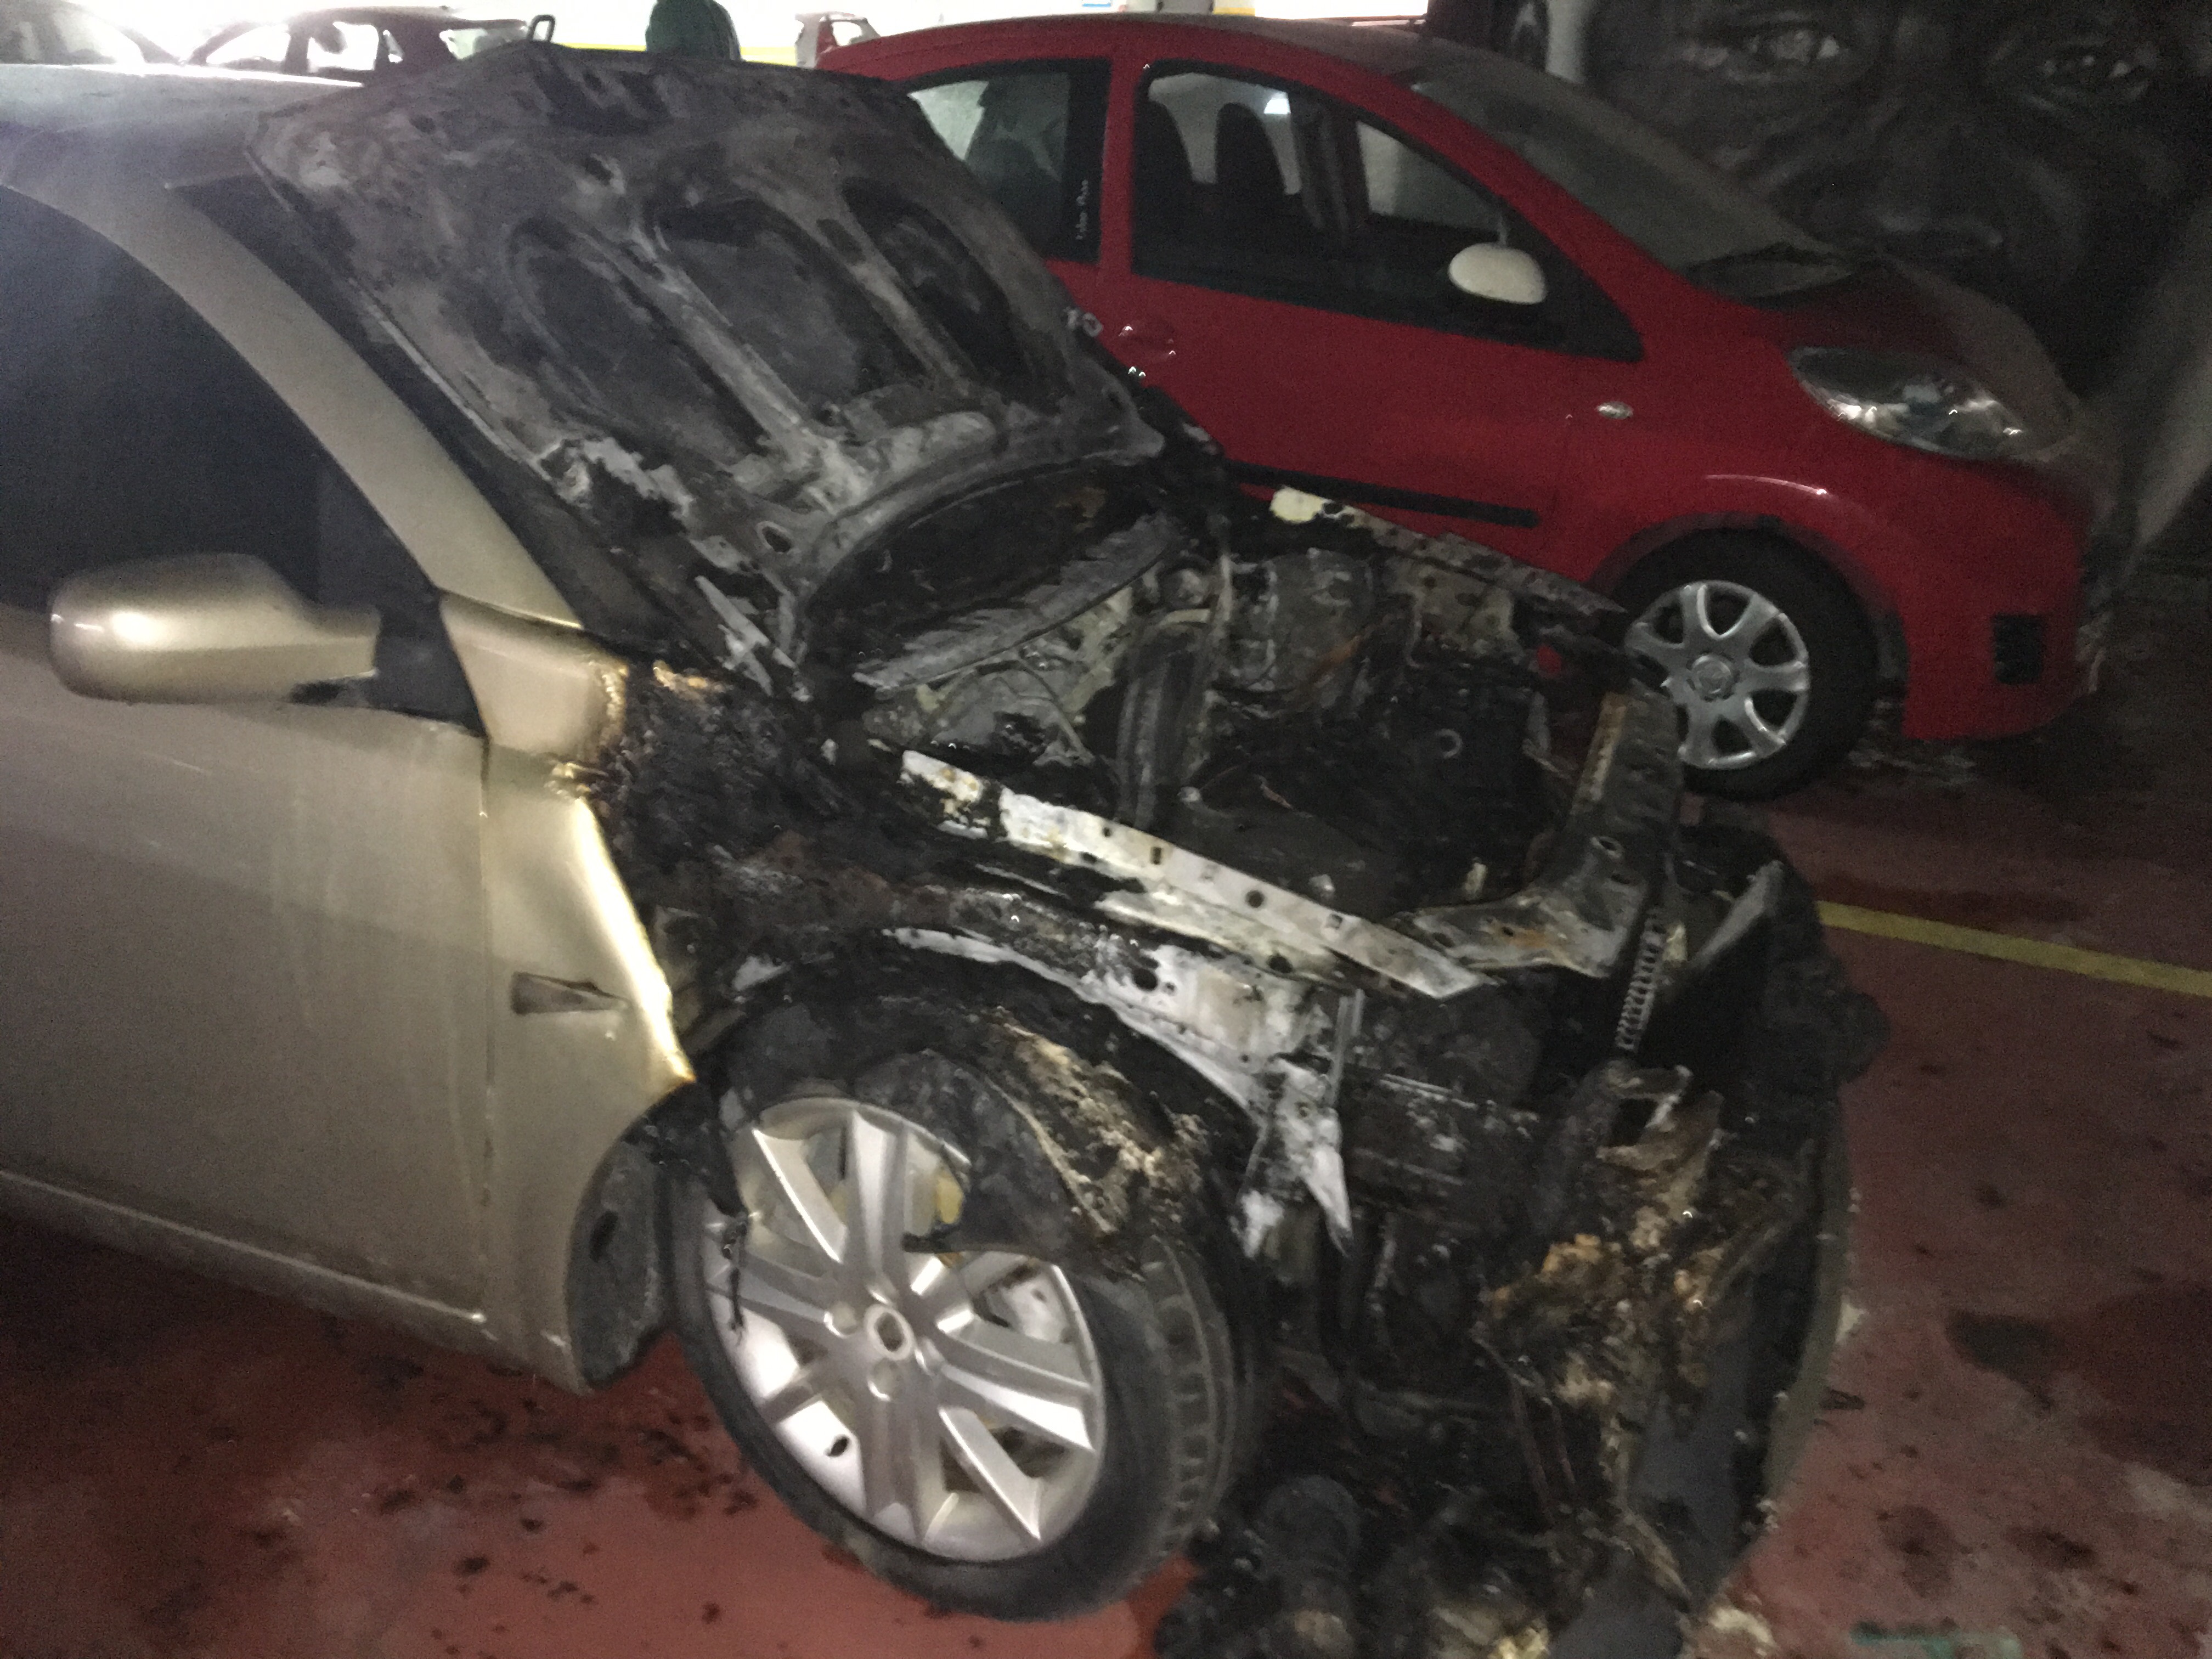 Αμάξι πήρε φωτιά μέσα στο πάρκινγκ του δήμου Χανίων (φωτο)